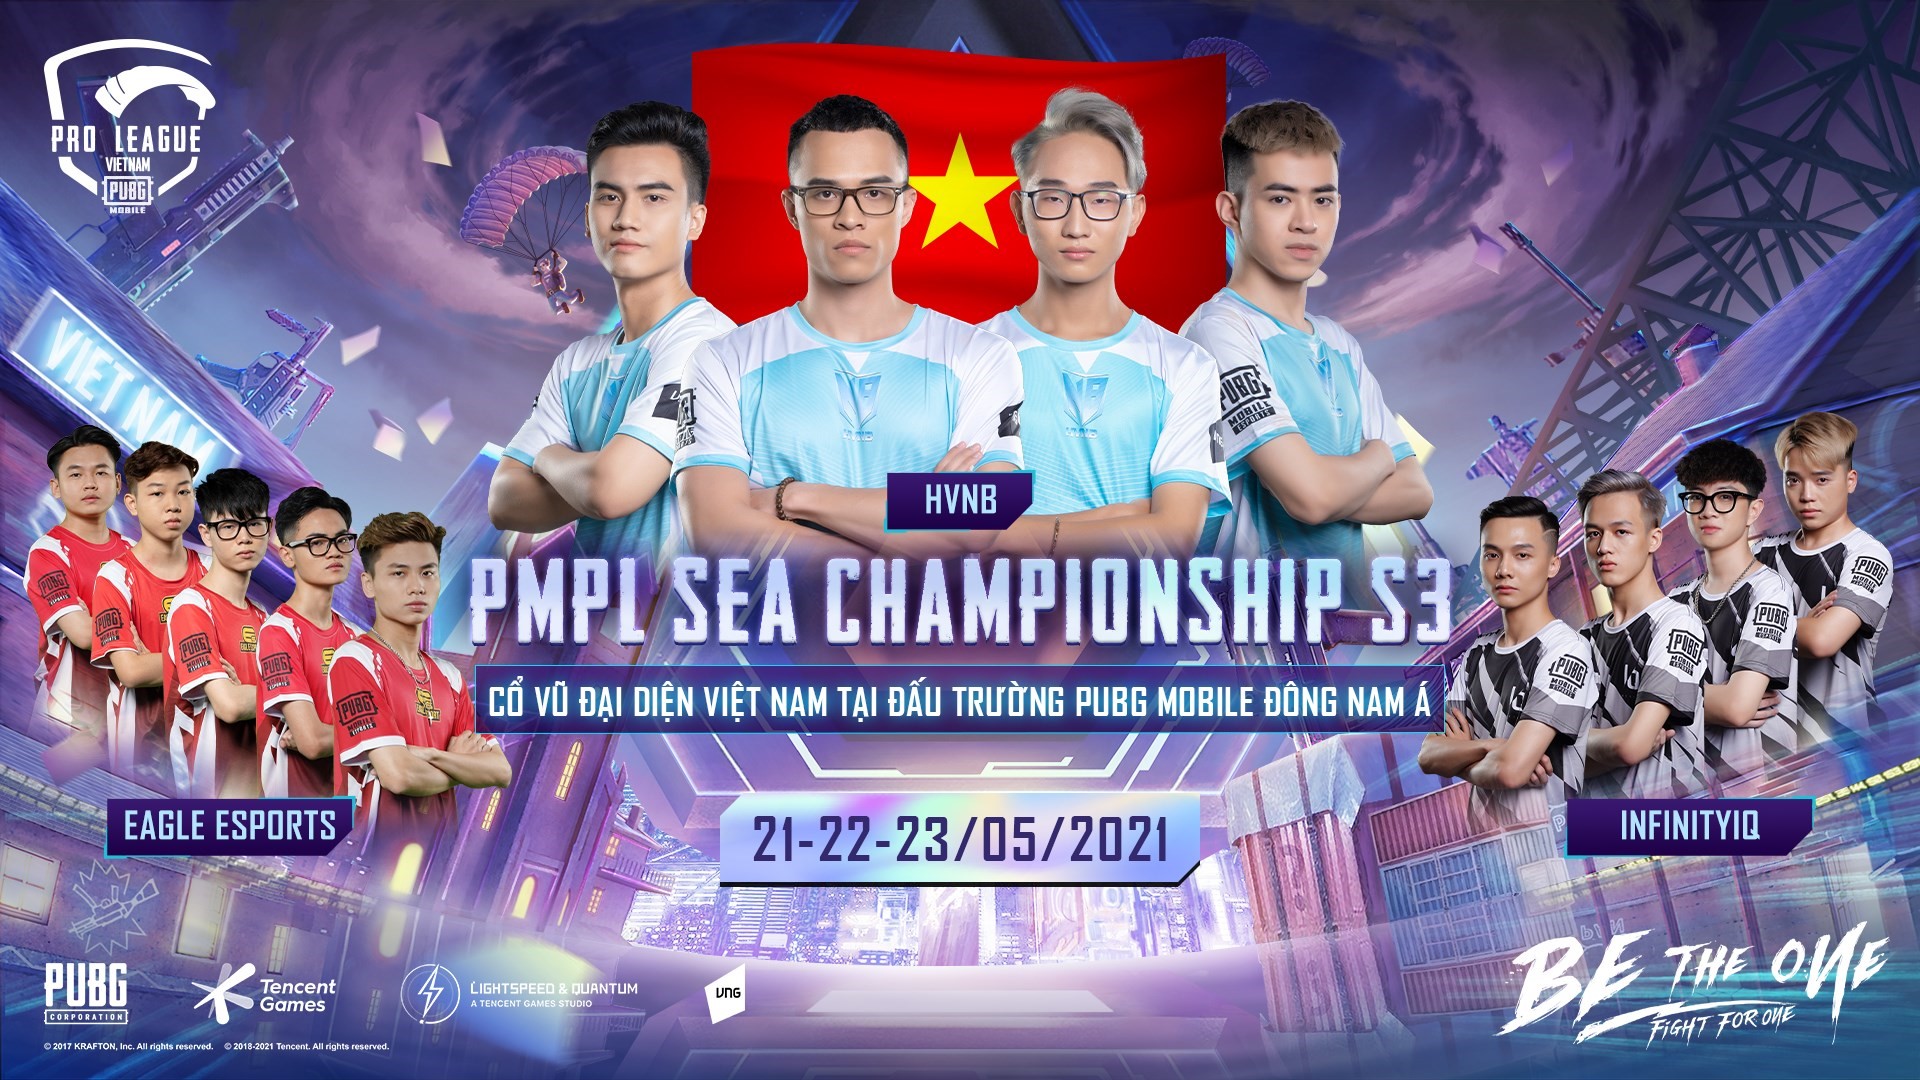 Danh sách các đội tuyển tham gia thi đấu PMPL SEA Championship S3 - Ảnh 2